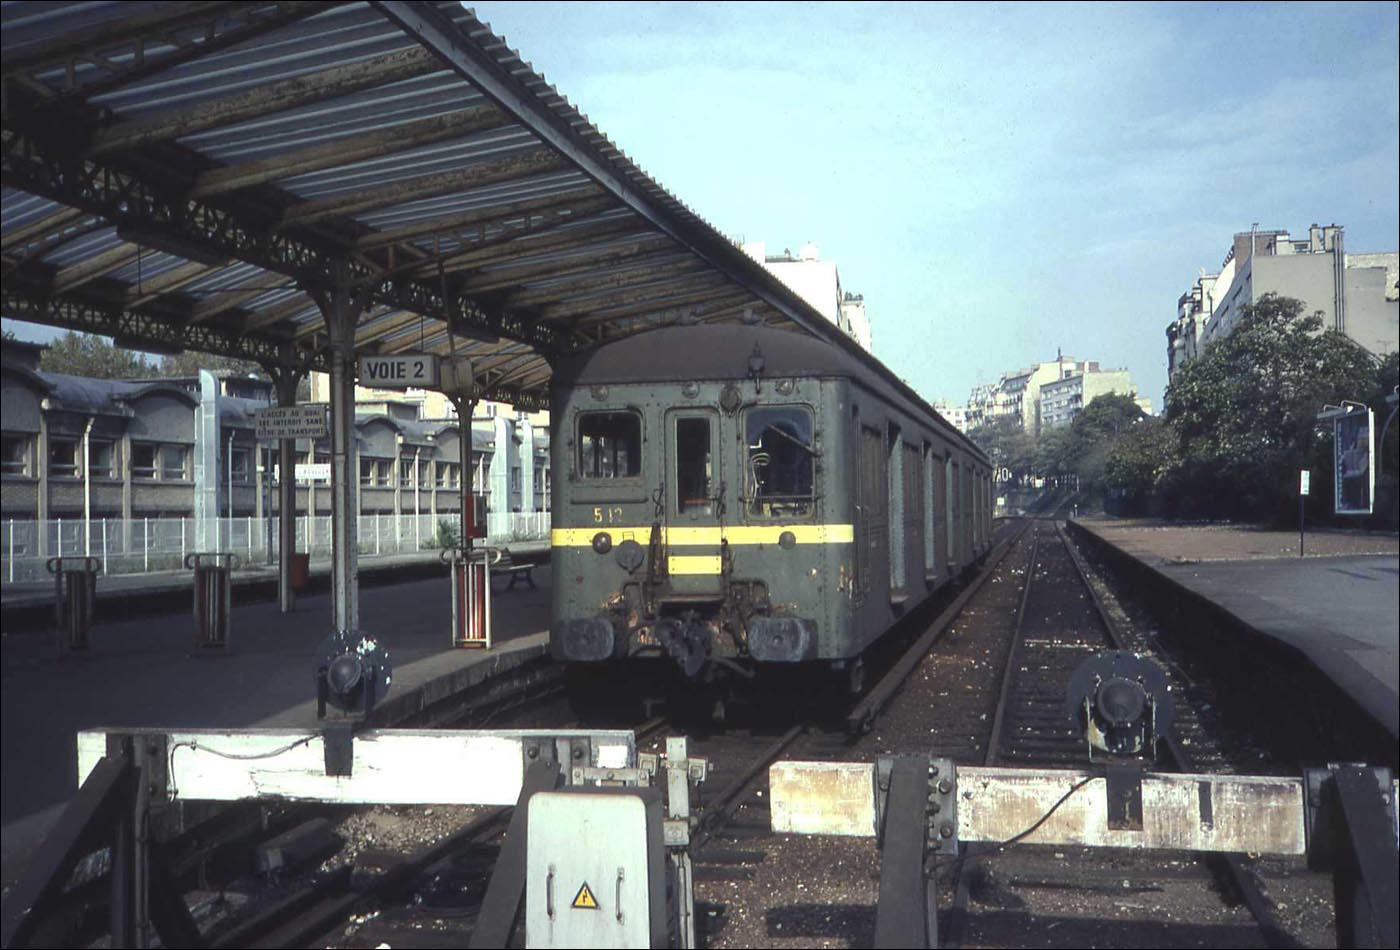 État, később SNCF Z1500-as sorozatú motorvonat Auteuil – Boulogne állomáson 1982-ben. (Forrás: Smiley.toerist | Wikimedia)